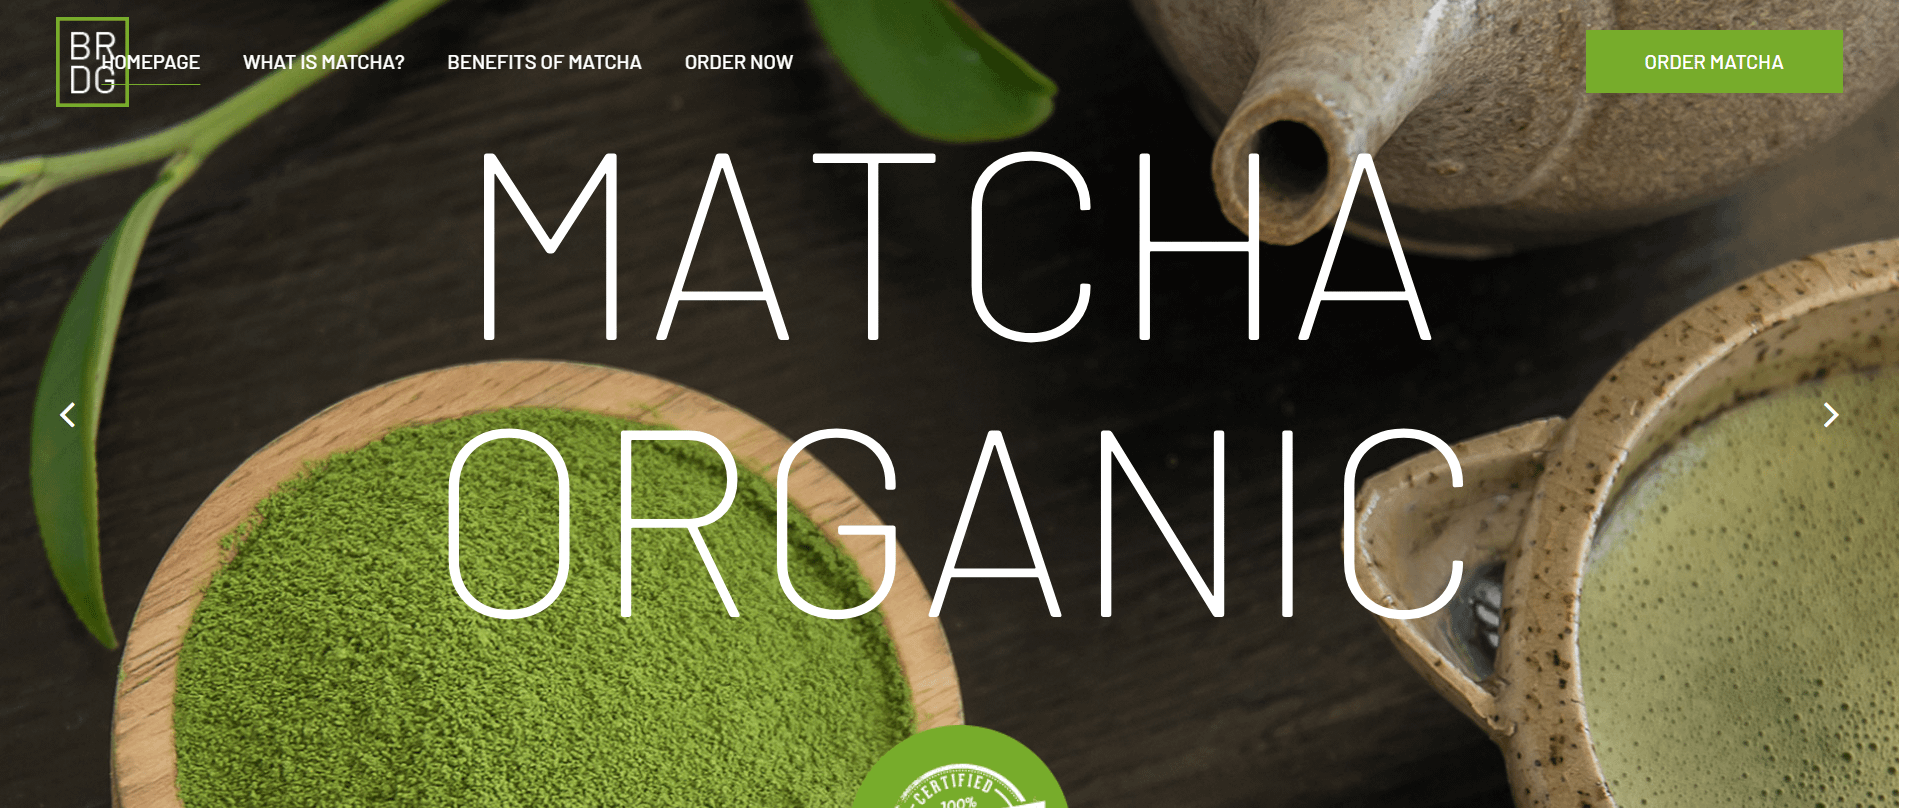 Matcha Organic - Sale of Matcha tea